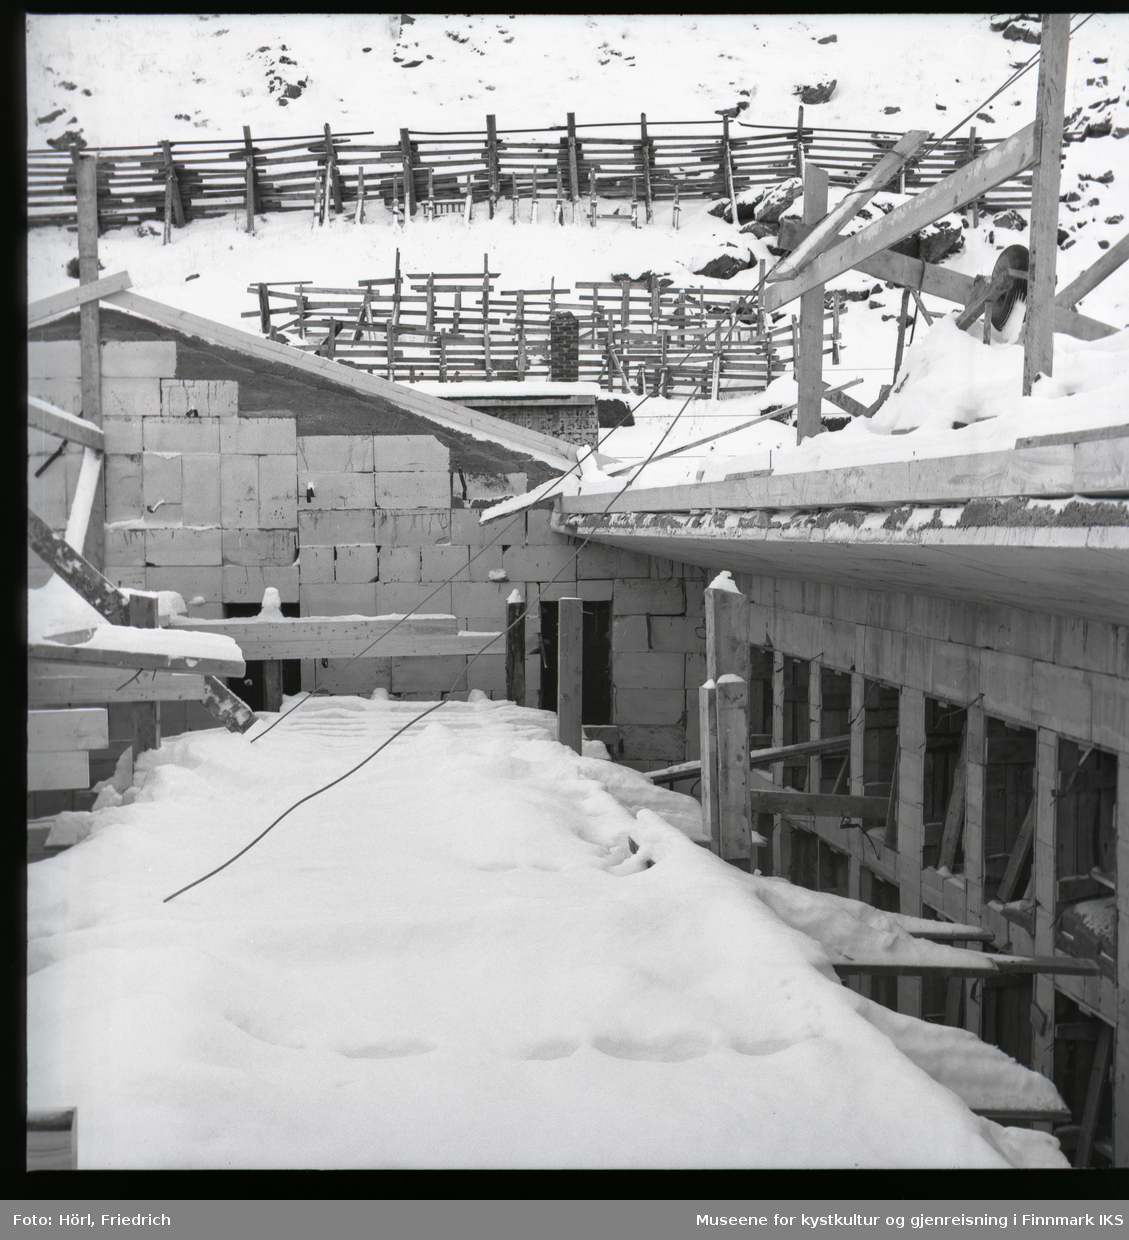 Bildet er tatt fra et stillas som står i råbygget til den katolske kirka St. Mikael i Hammerfest i vinteren 1957 /1958. Det er tatt i retning Salenfjellet der det er satt opp snøgjerder som til dels virker provisorisk.